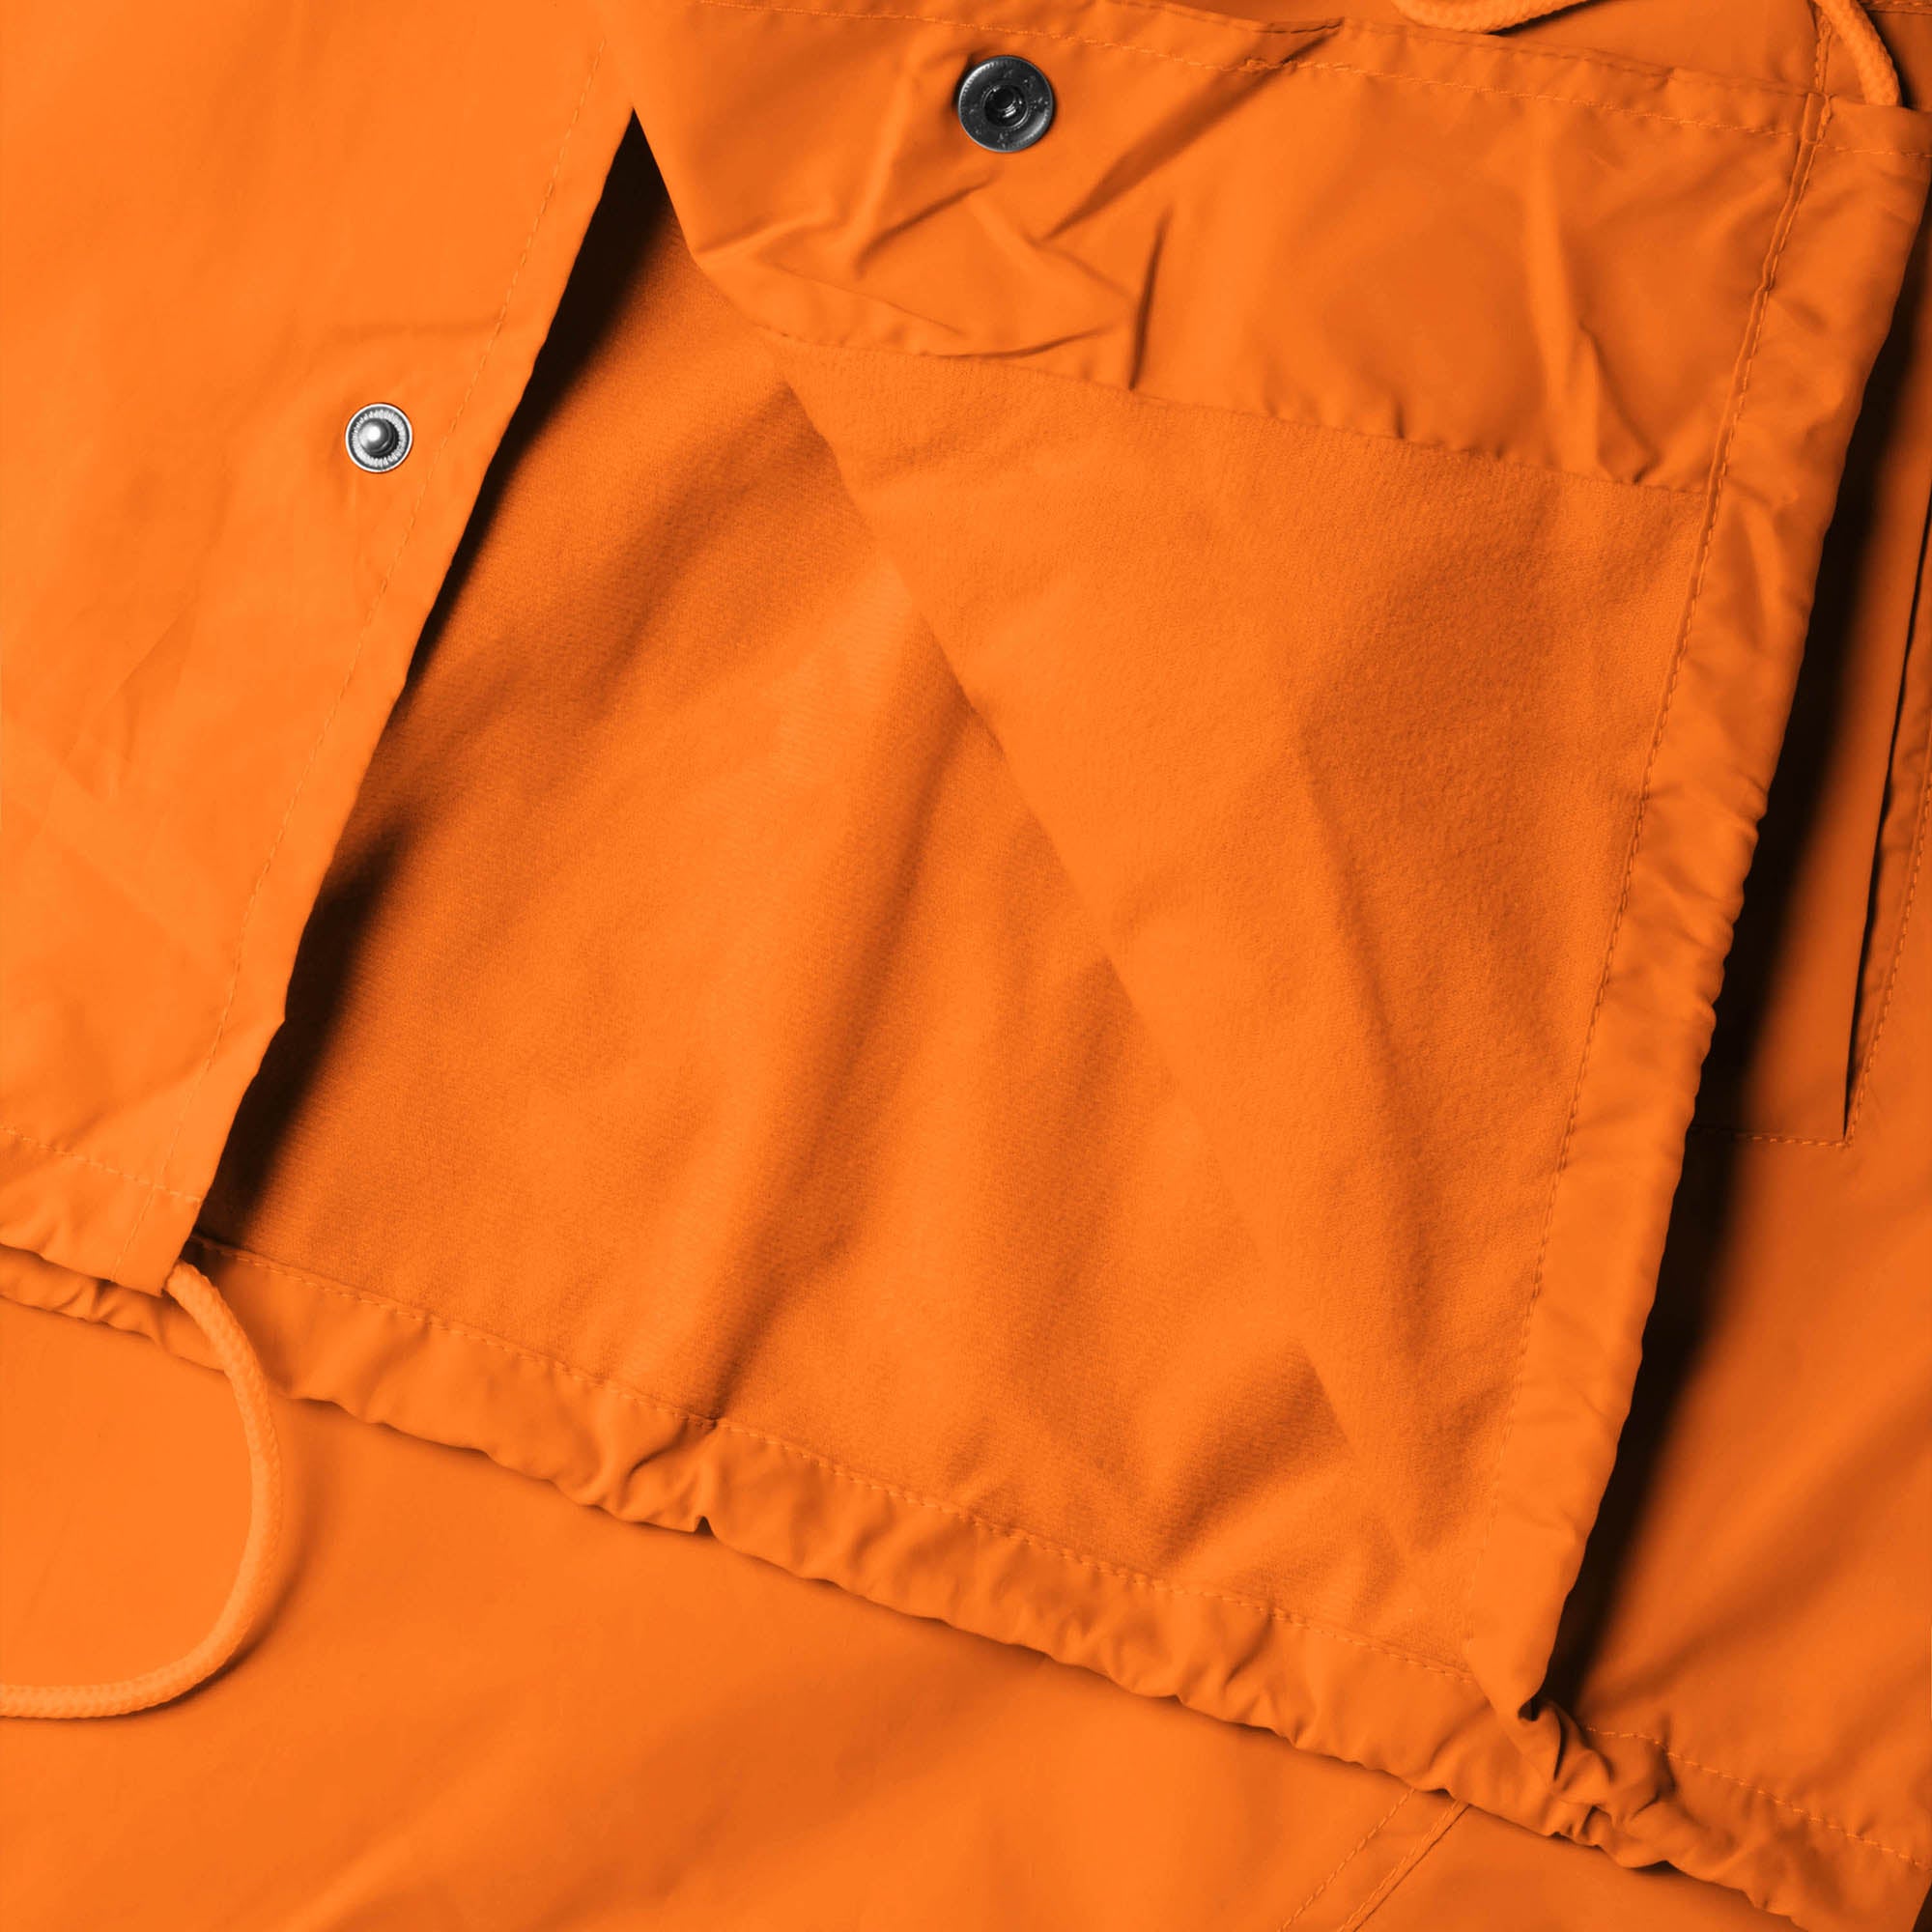 waterproof jacket_waterproofs_mens waterproof jacket_best rain jacket_lightweight waterproof jacket_water resistant jacket_Orange